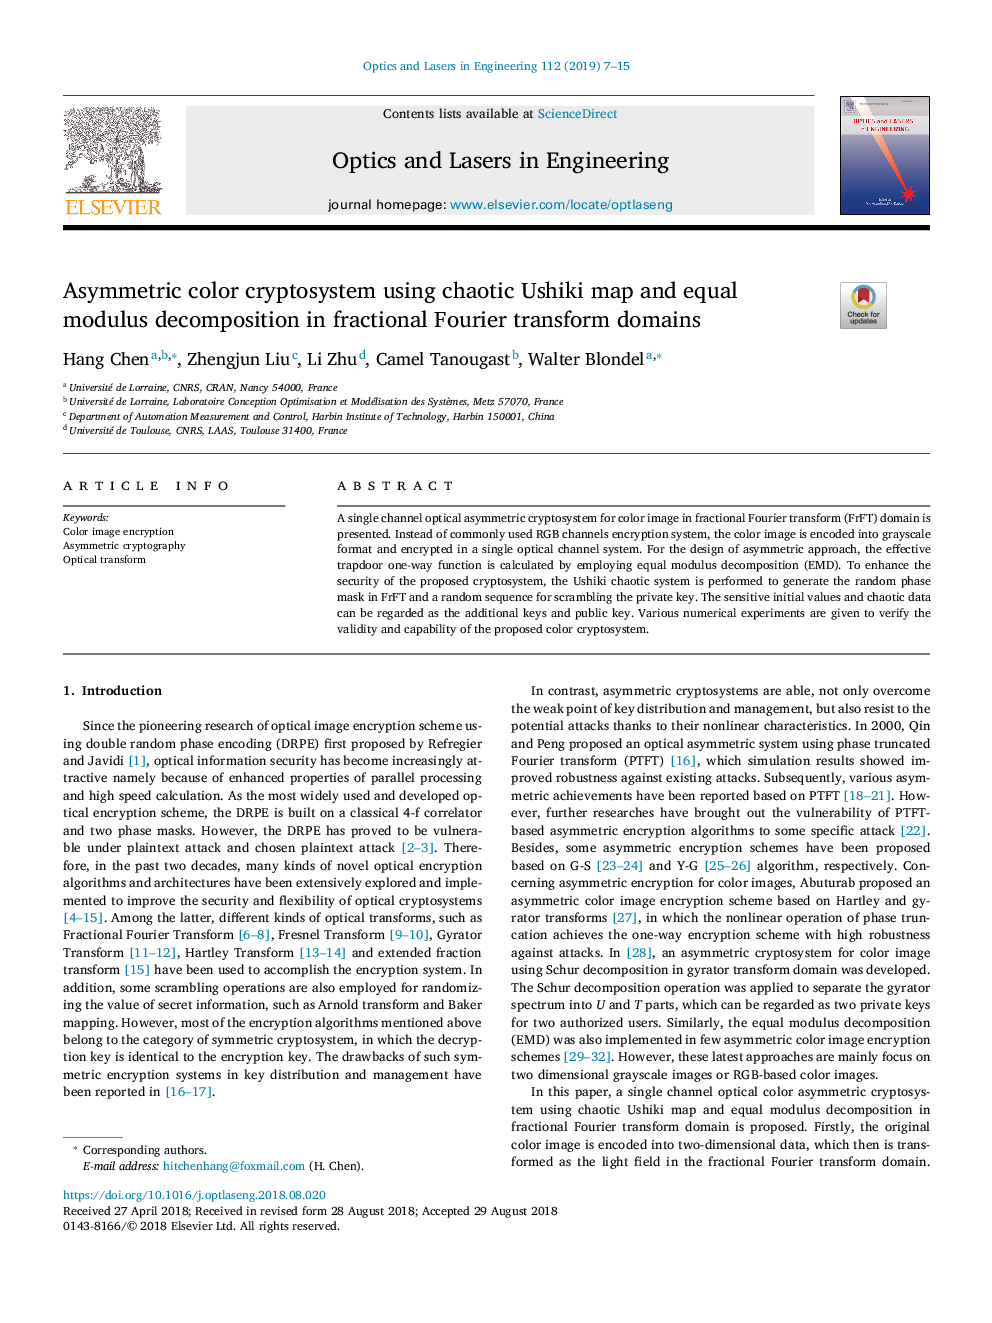 رمزنگاری رنگ نامتقارن با استفاده از نقشه یوحشی یوکی و تجزیه مدول یکسانی در حوزه های تبدیل فوریه